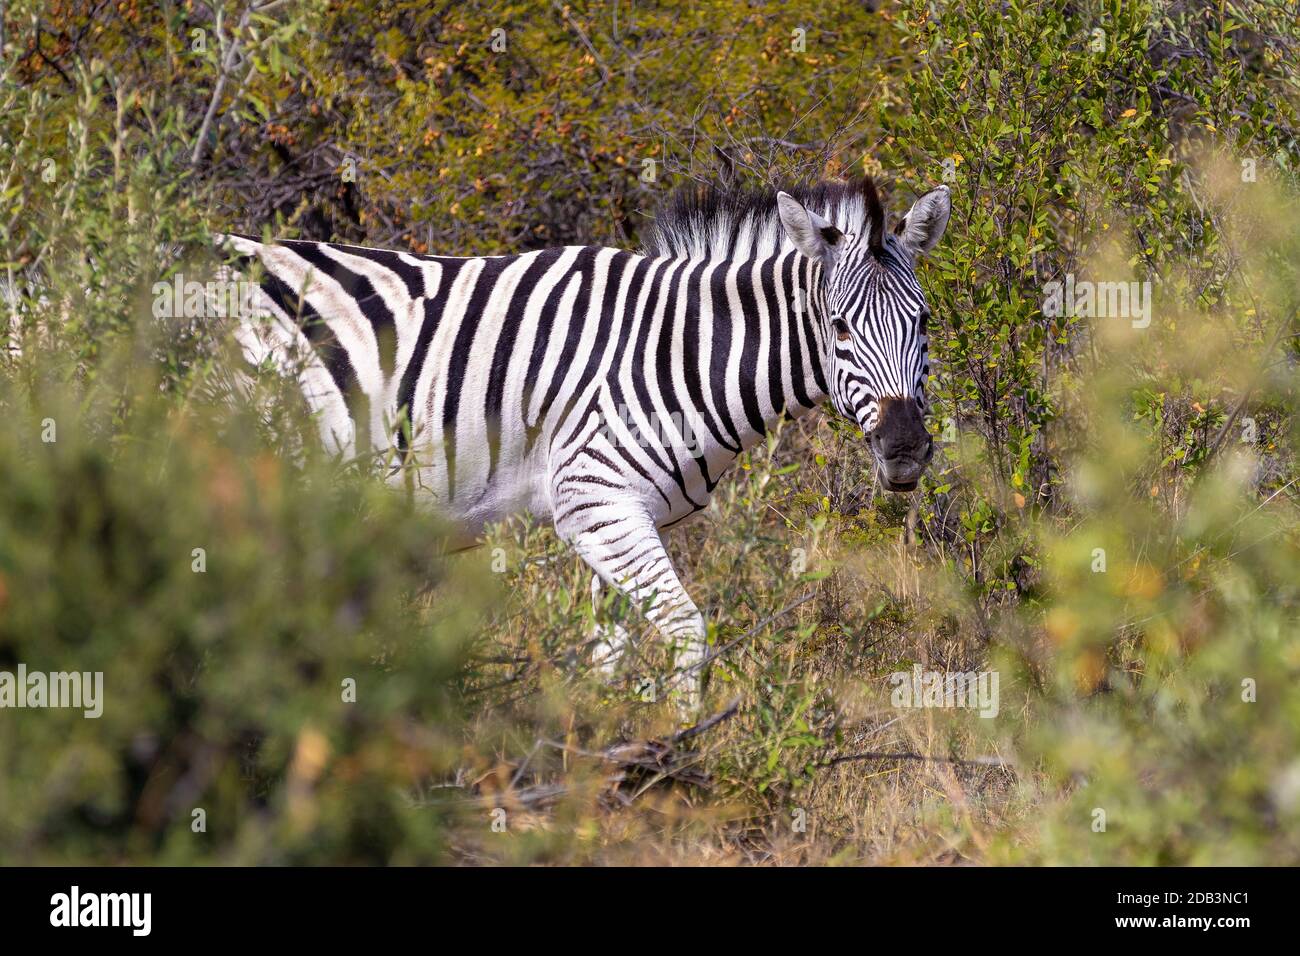 Schöne abgestreift Zebra Kopf im afrikanischen Busch. Khama Rhino Sanctuary Reservierung, Botswana Safari Wildlife. Wildes Tier in der Natur Lebensraum. Dies ist Stockfoto